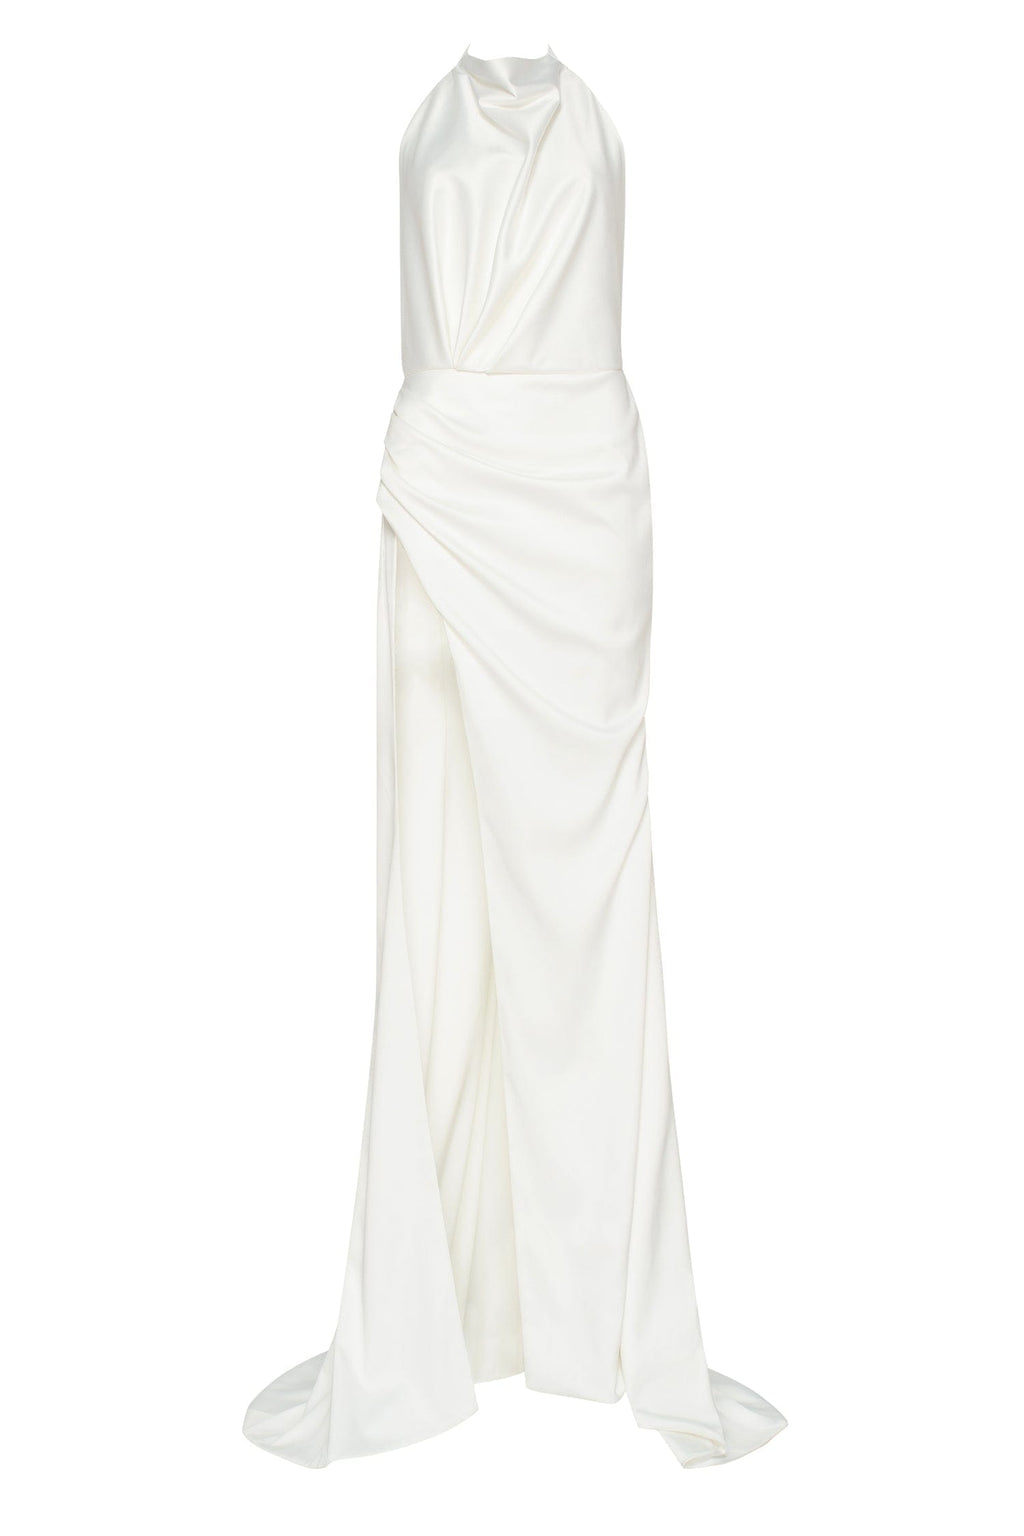 White Mock neck sleeveless high slit dress Milla Dresses - USA ...